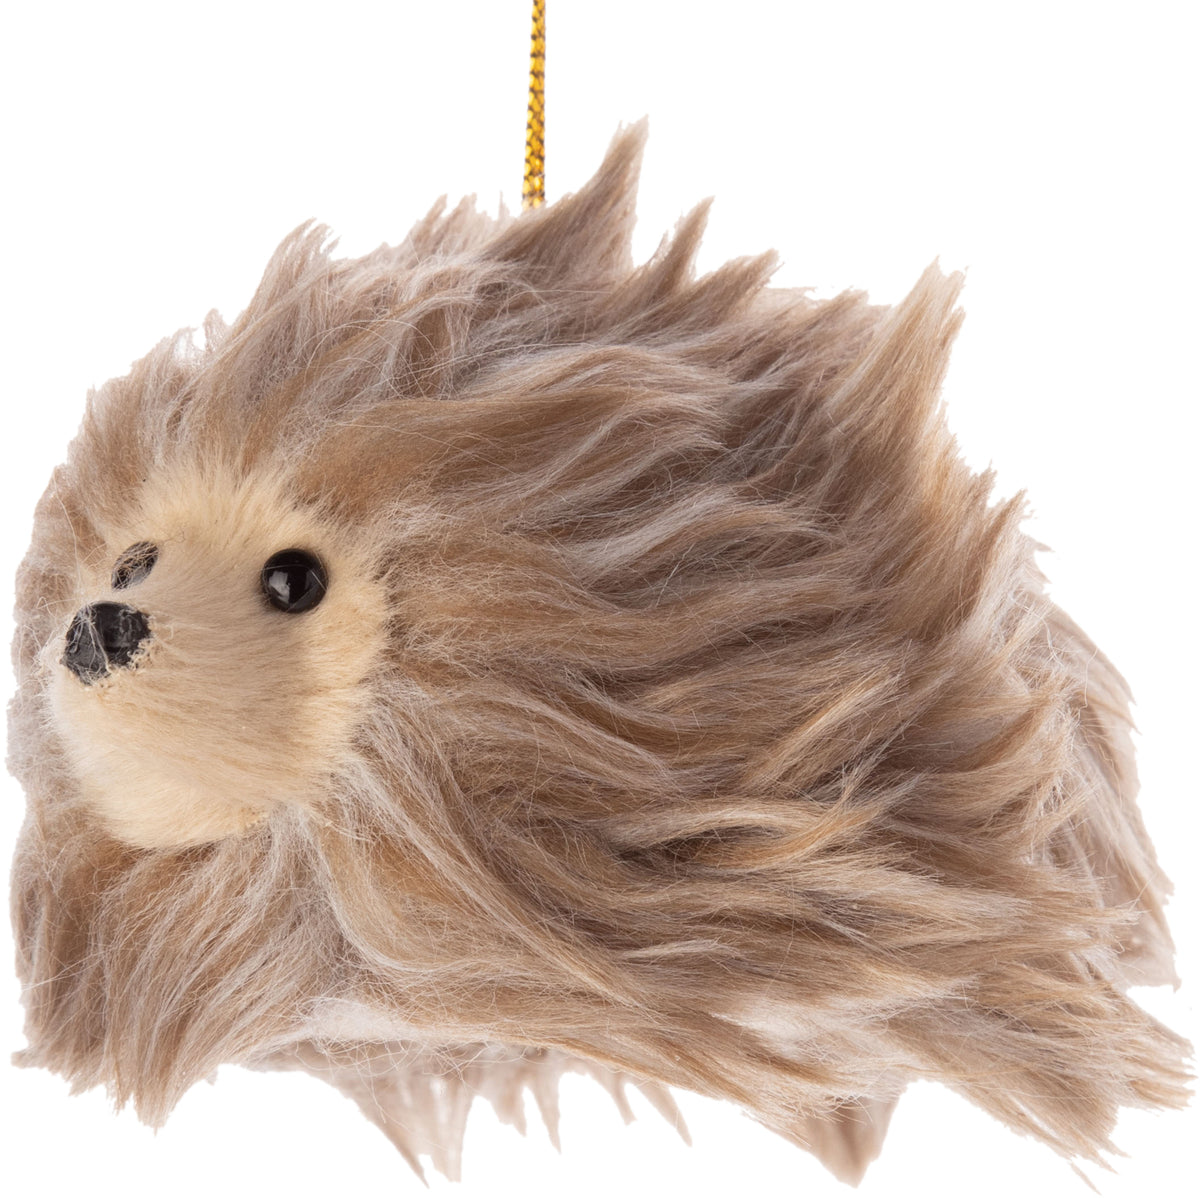 Fuzzy Hedgehog Ornament